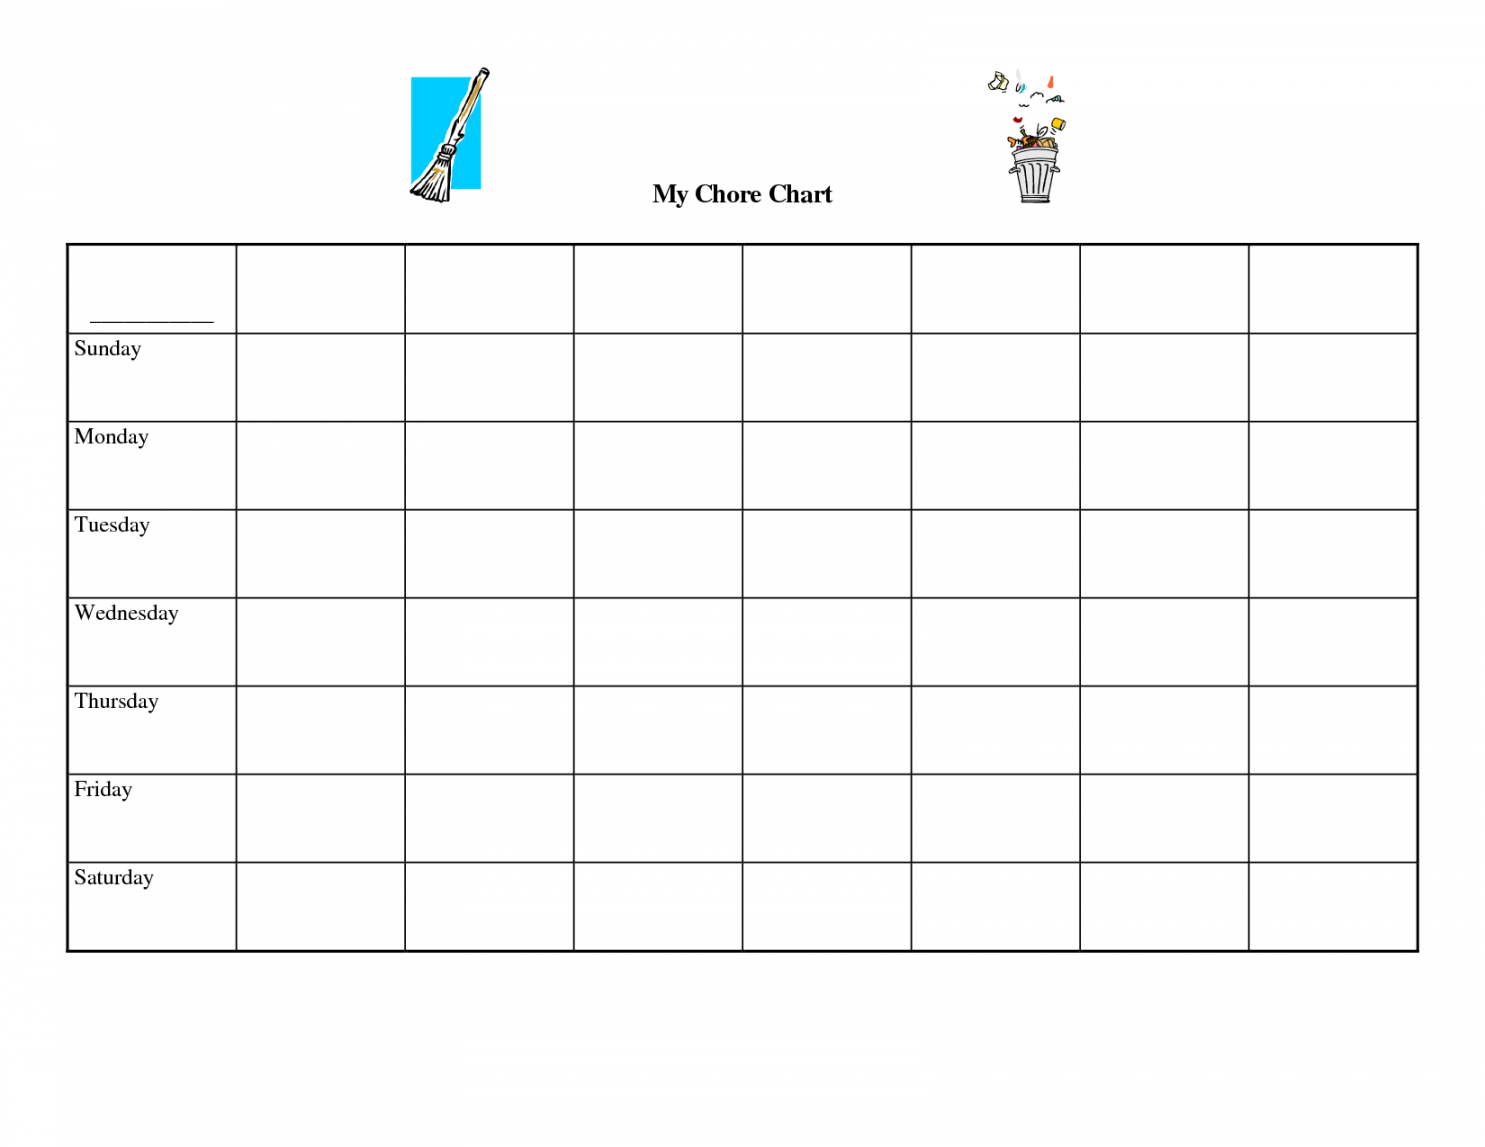 Printable Blank Chore Chart Templates  Chore chart template, Free  - FREE Printables - Free Printable Blank Charts And Graphs